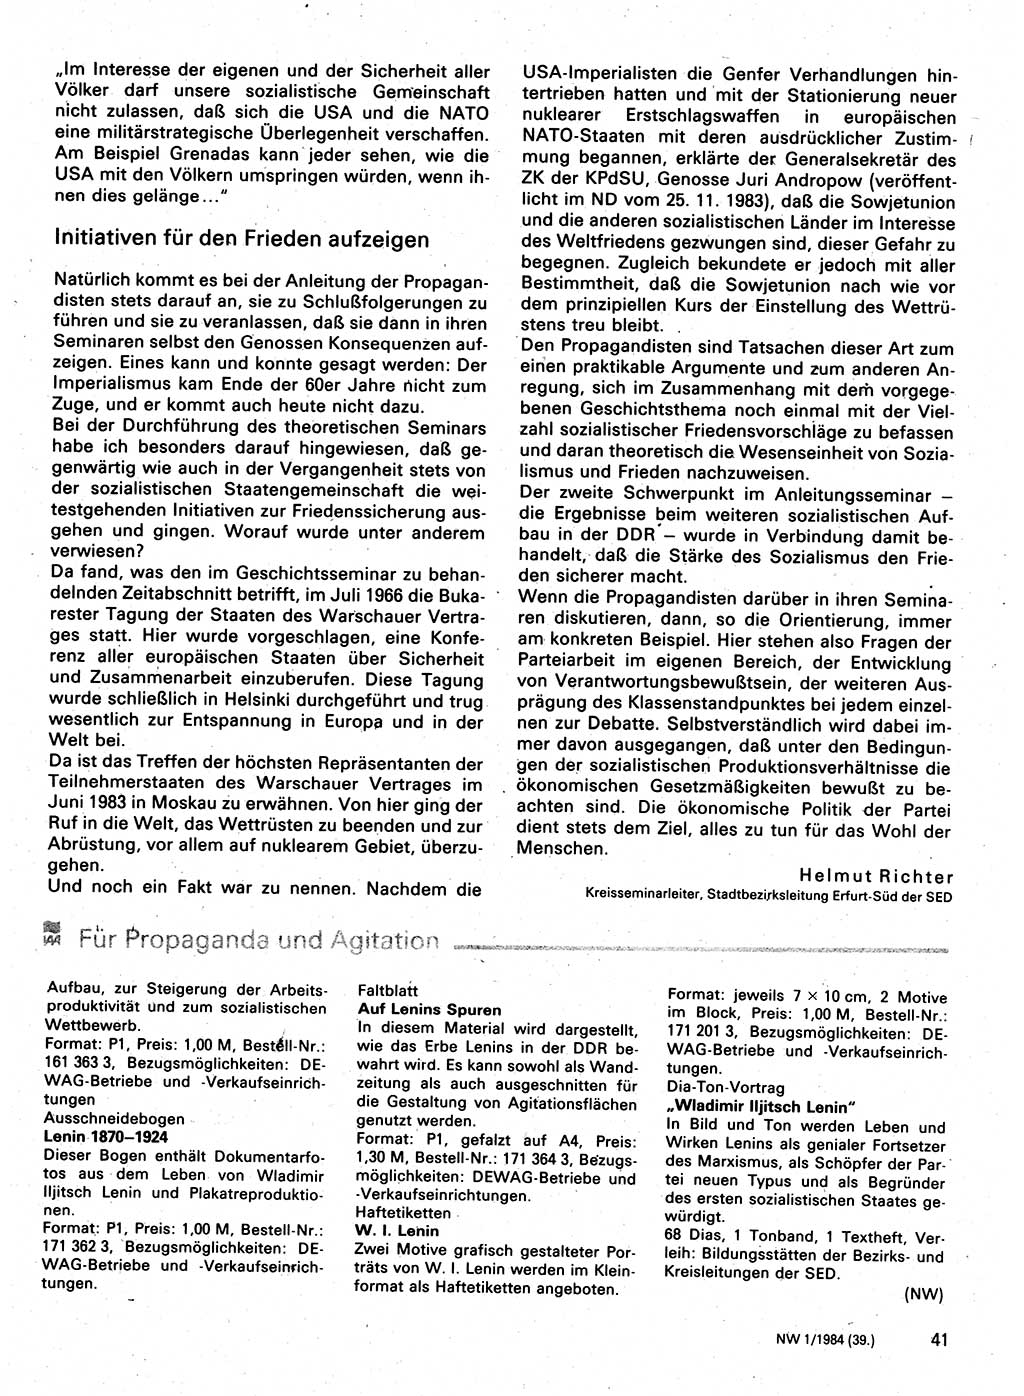 Neuer Weg (NW), Organ des Zentralkomitees (ZK) der SED (Sozialistische Einheitspartei Deutschlands) für Fragen des Parteilebens, 39. Jahrgang [Deutsche Demokratische Republik (DDR)] 1984, Seite 41 (NW ZK SED DDR 1984, S. 41)